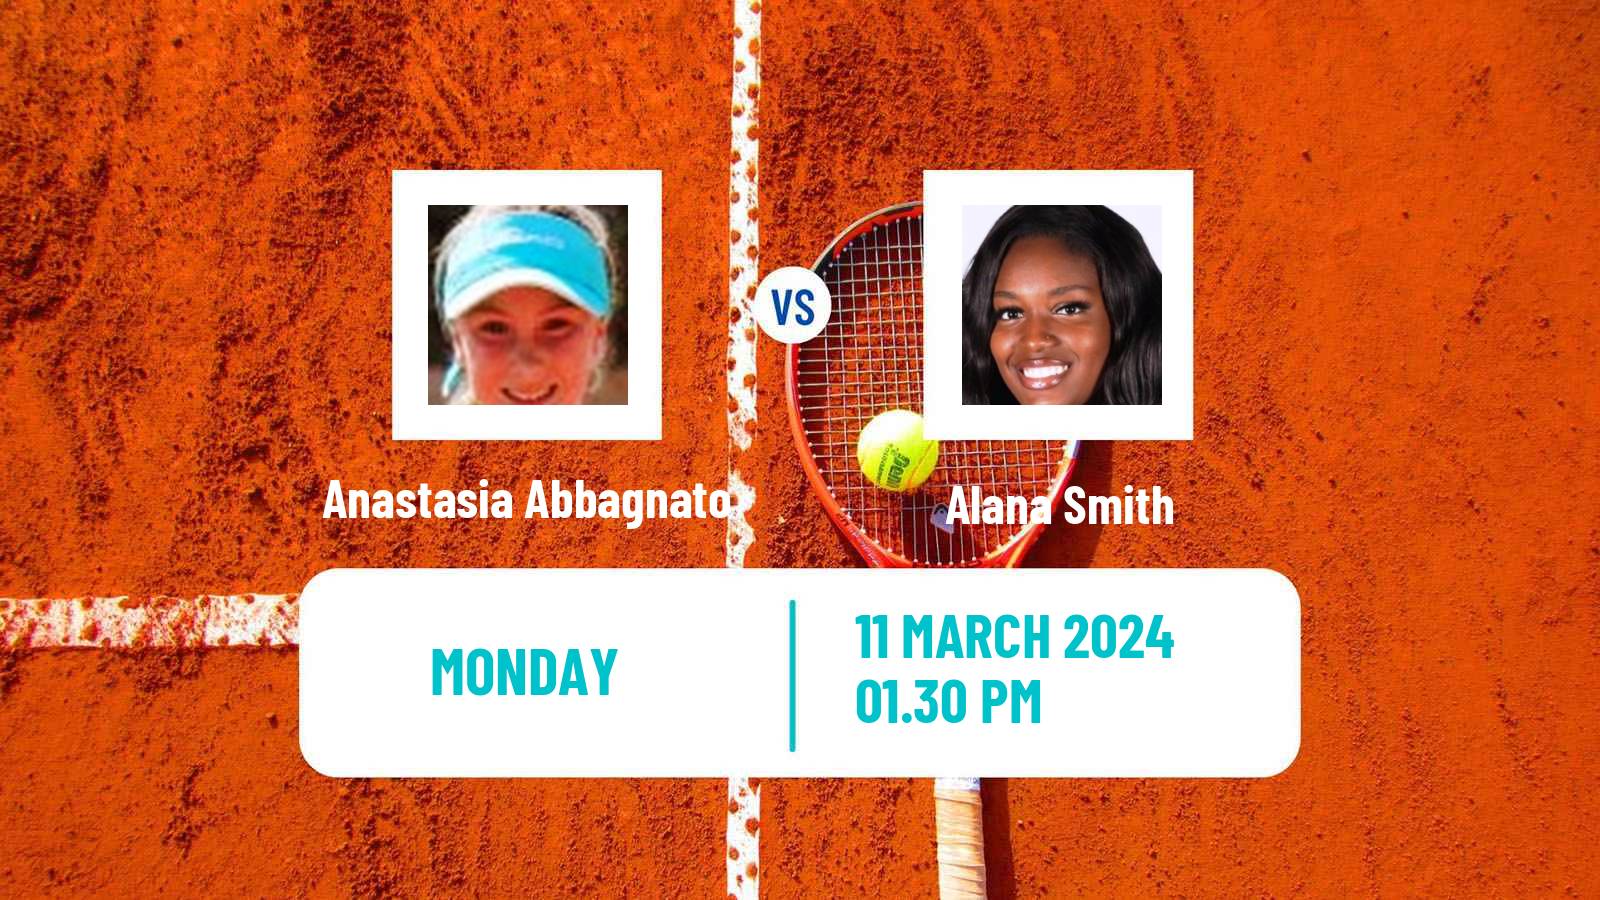 Tennis ITF W35 Santo Domingo 2 Women Anastasia Abbagnato - Alana Smith